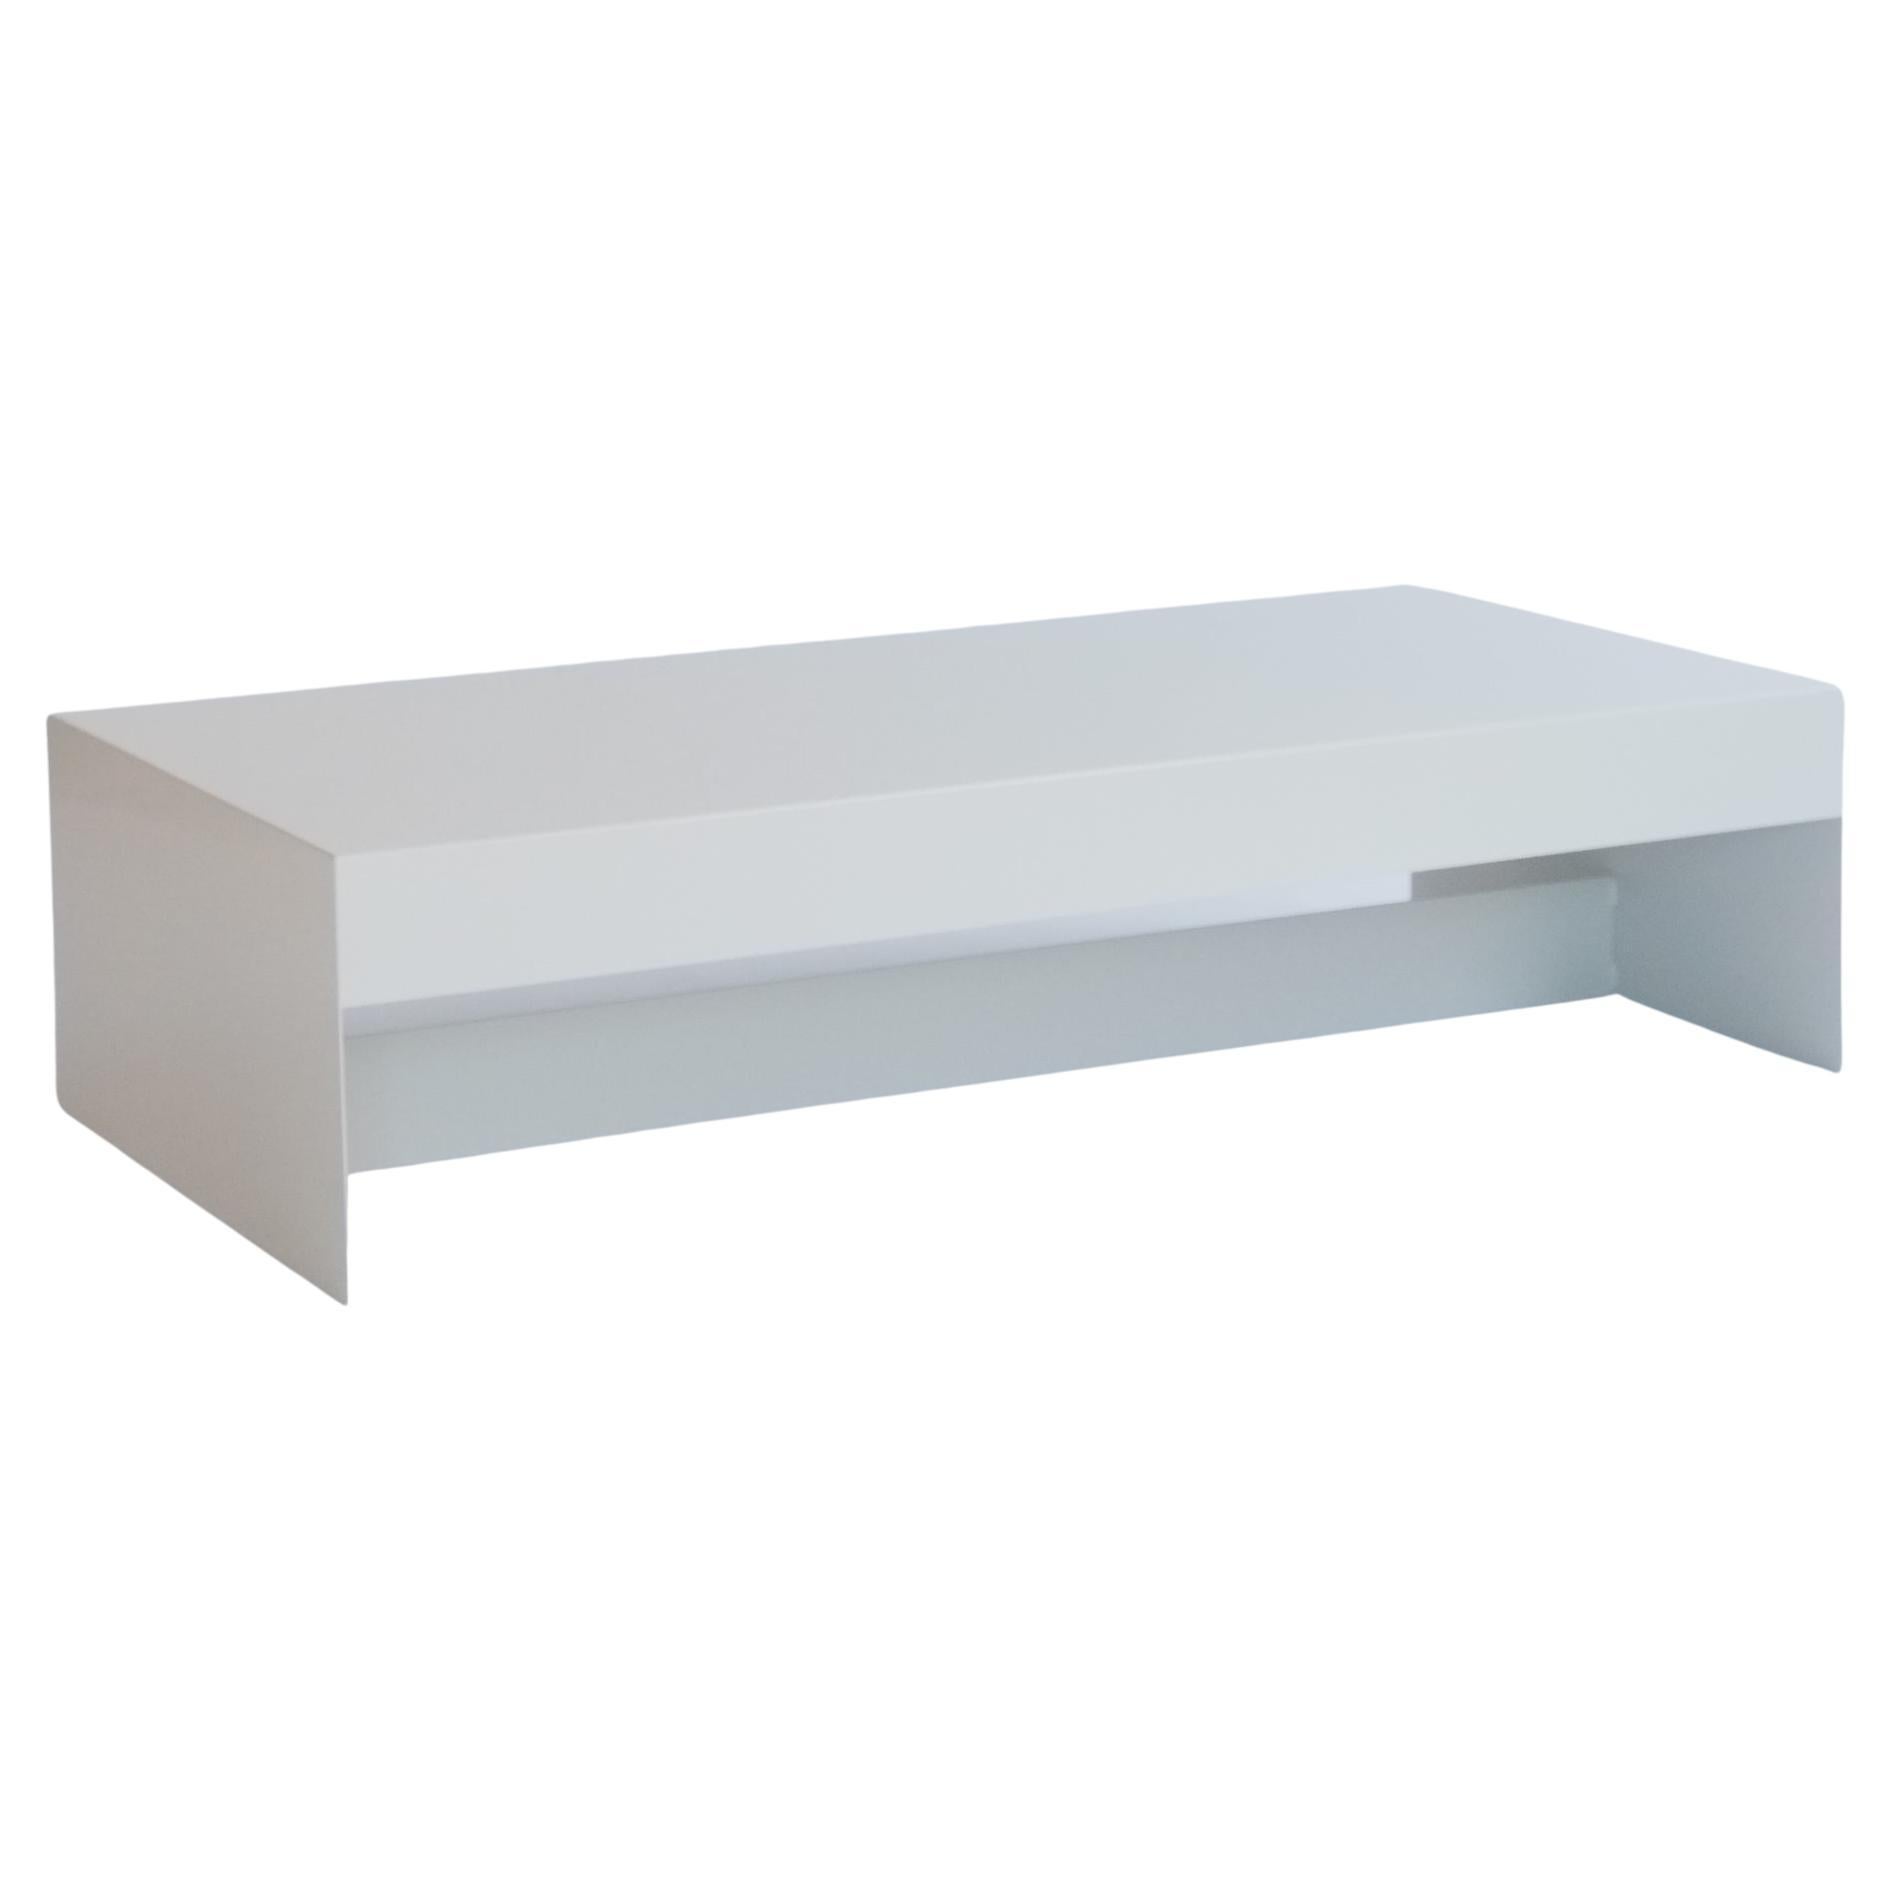 Table basse blanche en papier de forme simple en aluminium sur mesure, personnalisable